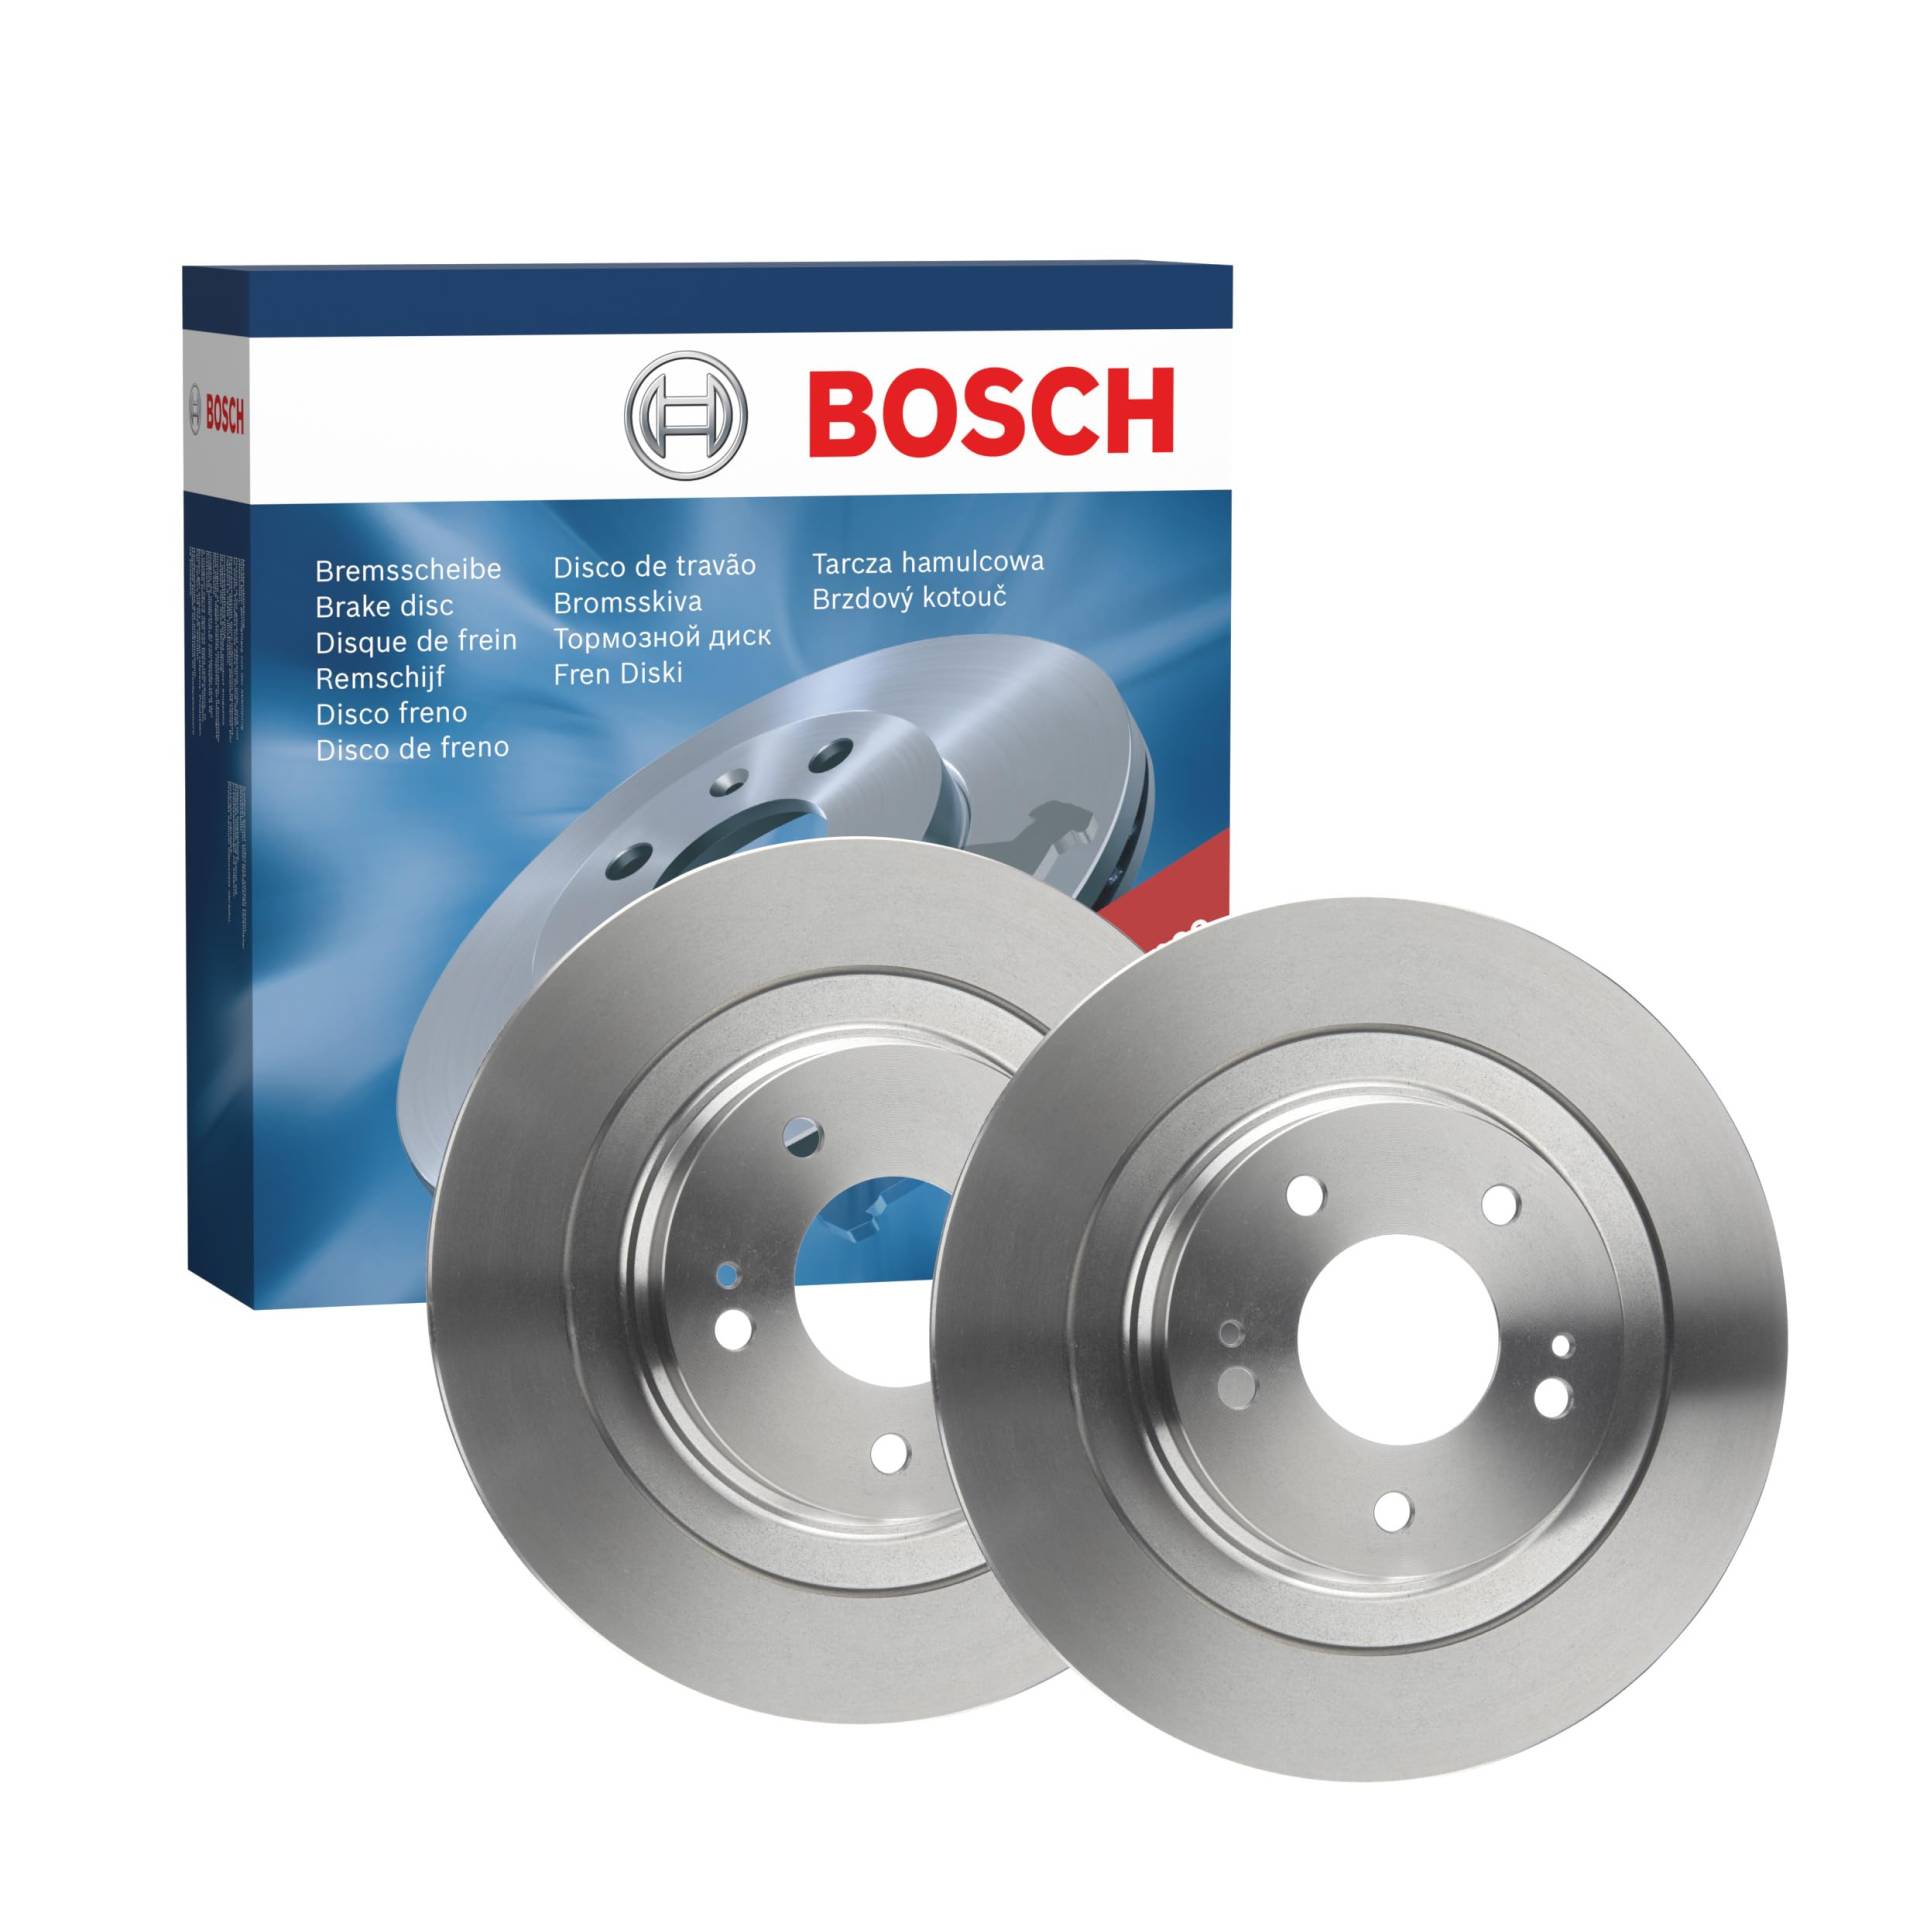 Bosch BD2005 Bremsscheiben - Hinterachse - ECE-R90 Zertifizierung - zwei Bremsscheiben pro Set von Bosch Automotive